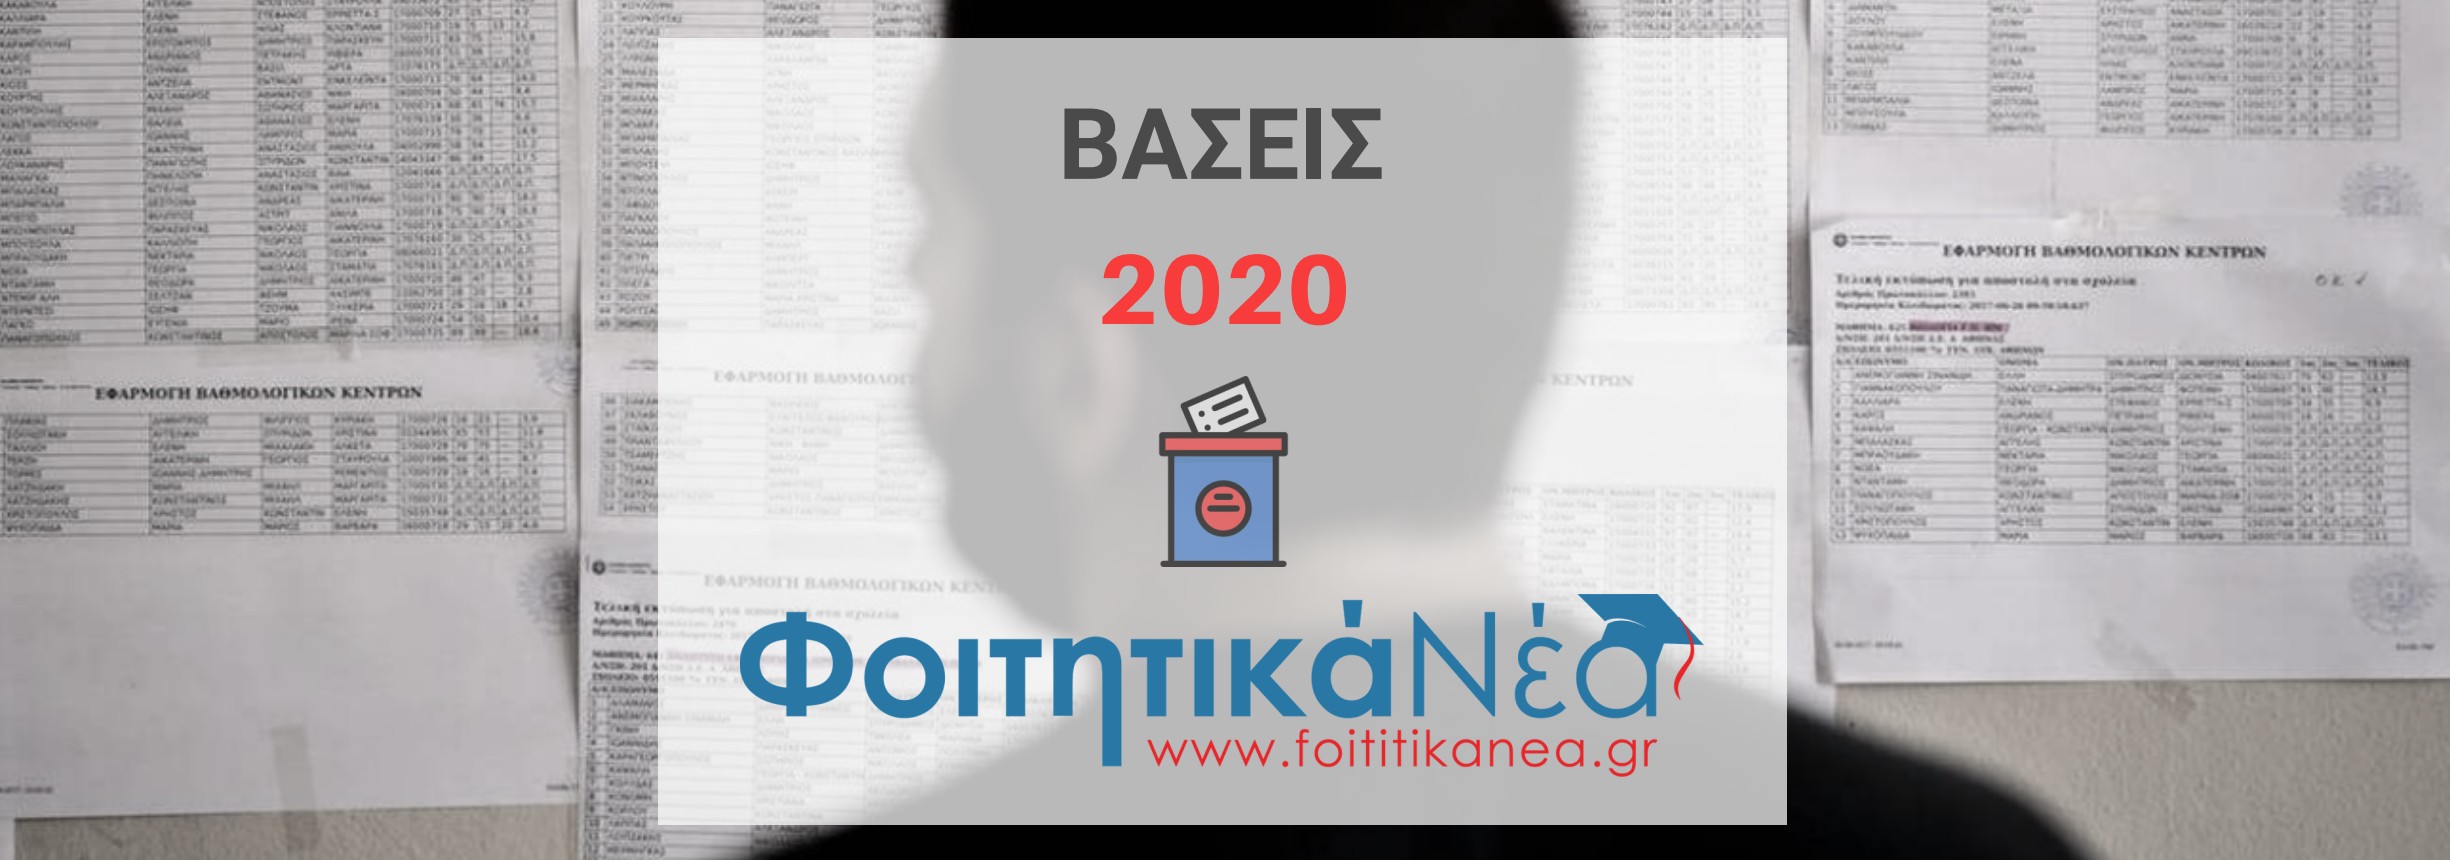 Βάσεις 2020